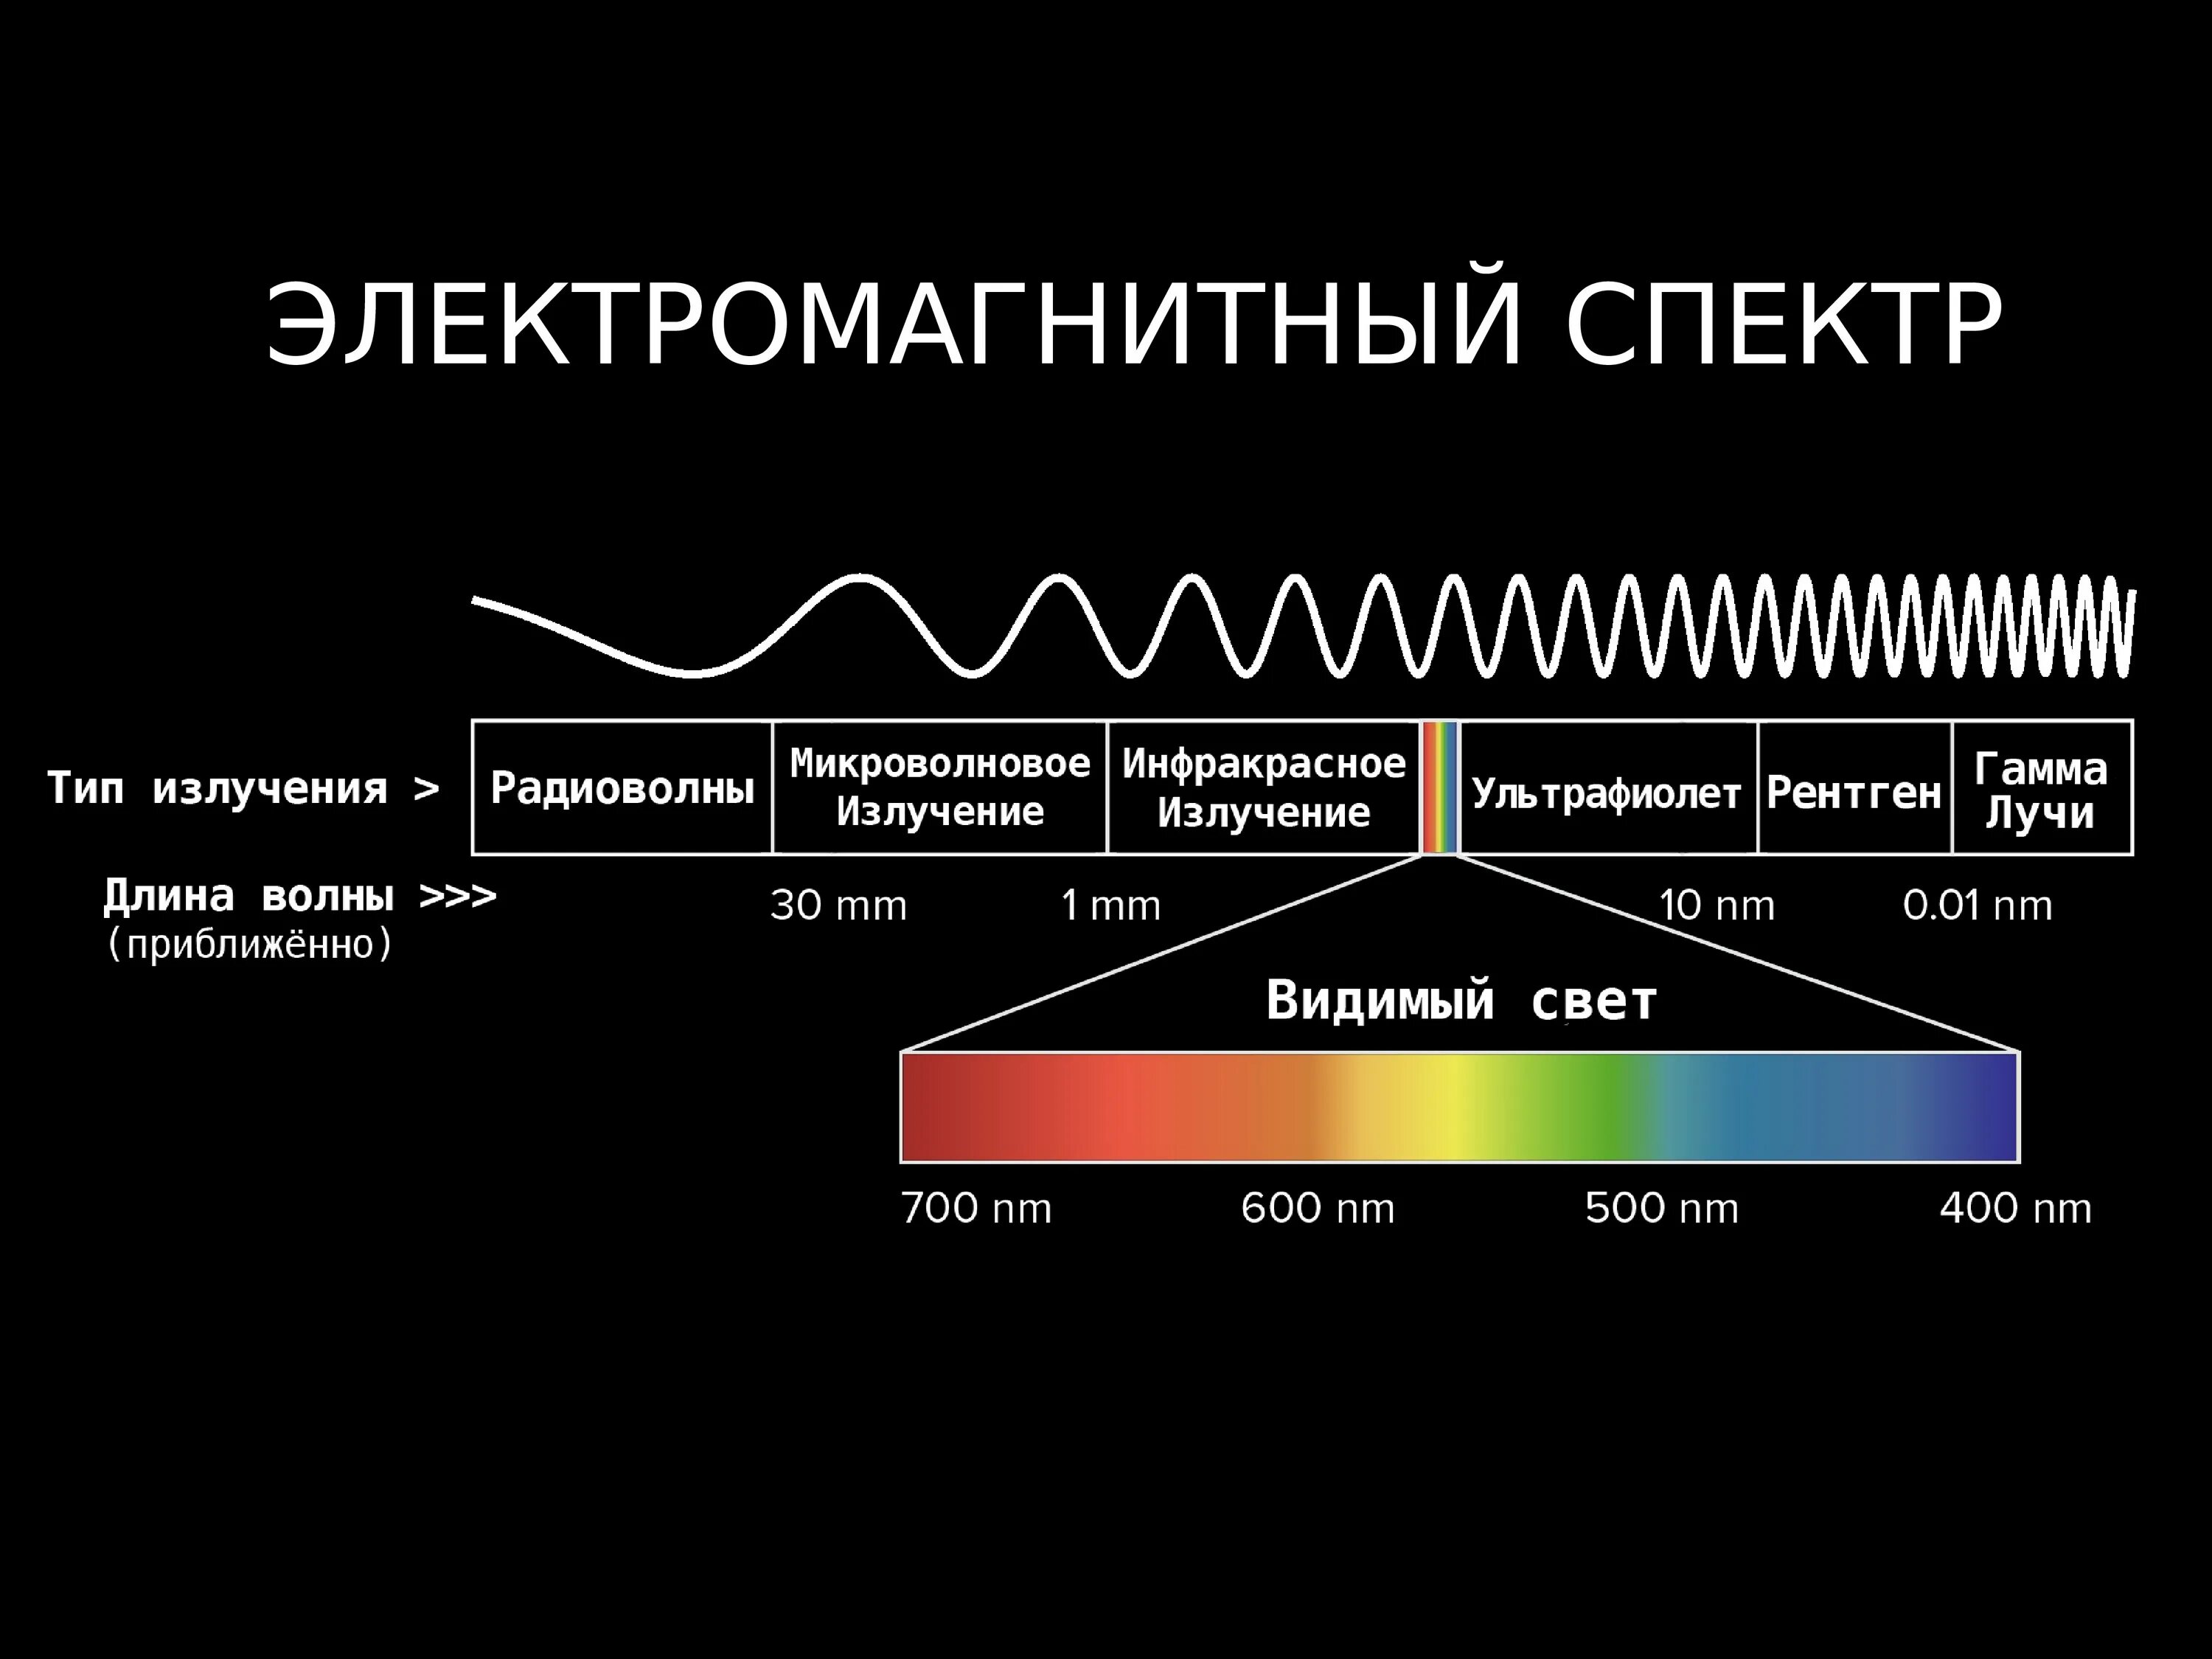 Видимый свет ггц. Диапазоны спектра электромагнитного излучения. Электромагнитное излучение спектр электромагнитного излучения. Спектр длин волн электромагнитных излучений. Длина волны электромагнитного излучения.